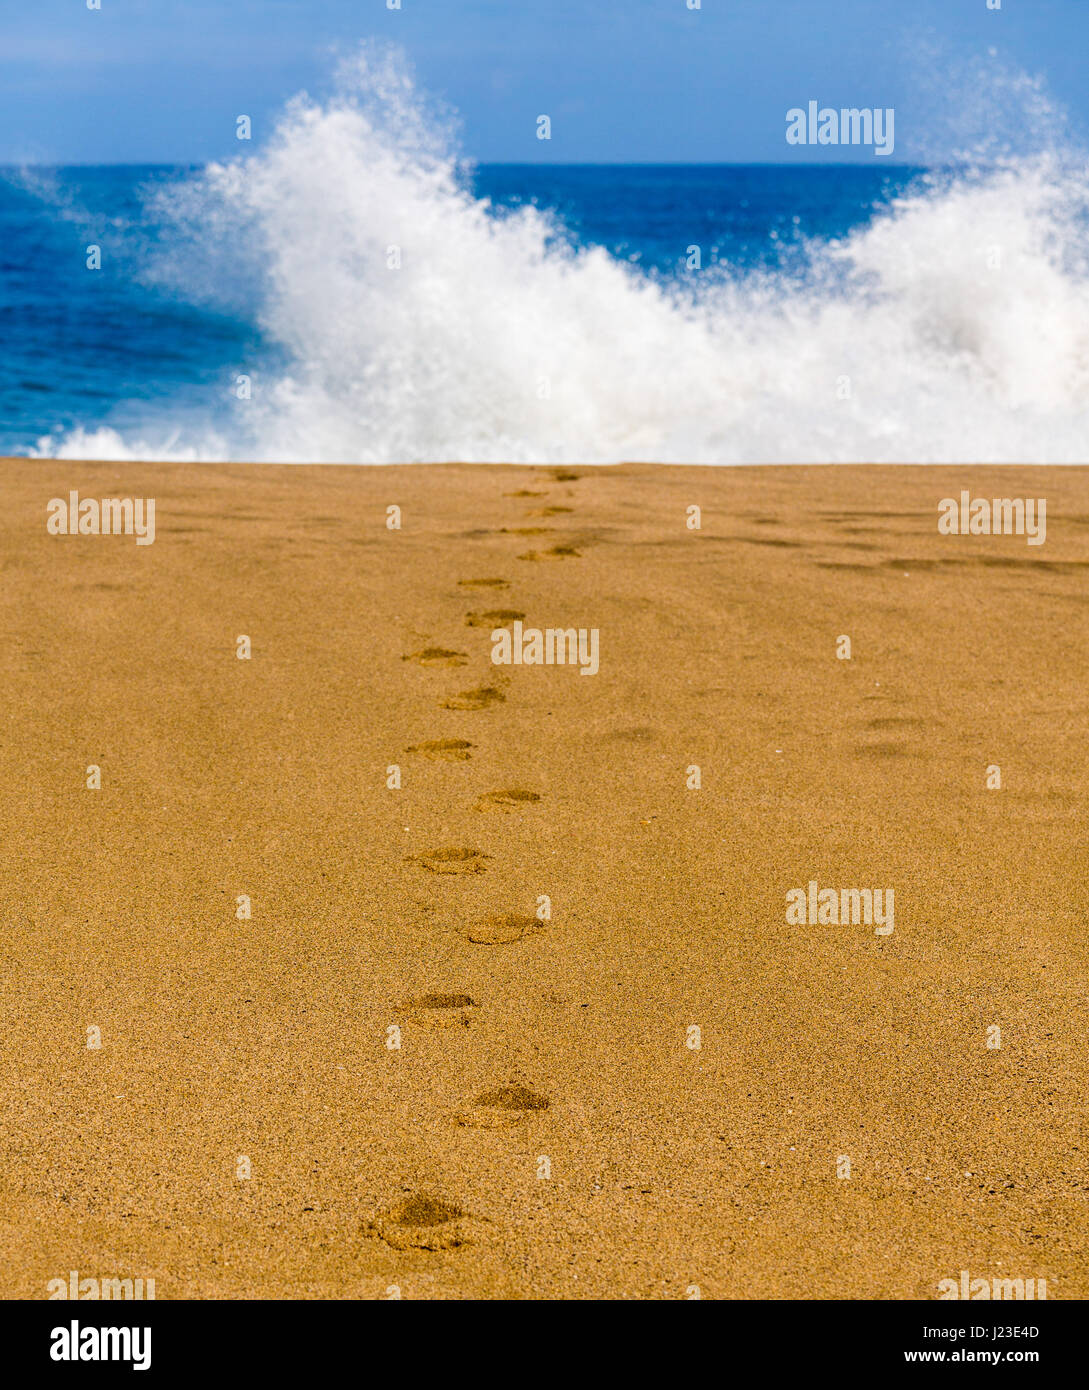 Fußspuren im Sand am Strand führt in Richtung Meer mit Wellen Stockfoto